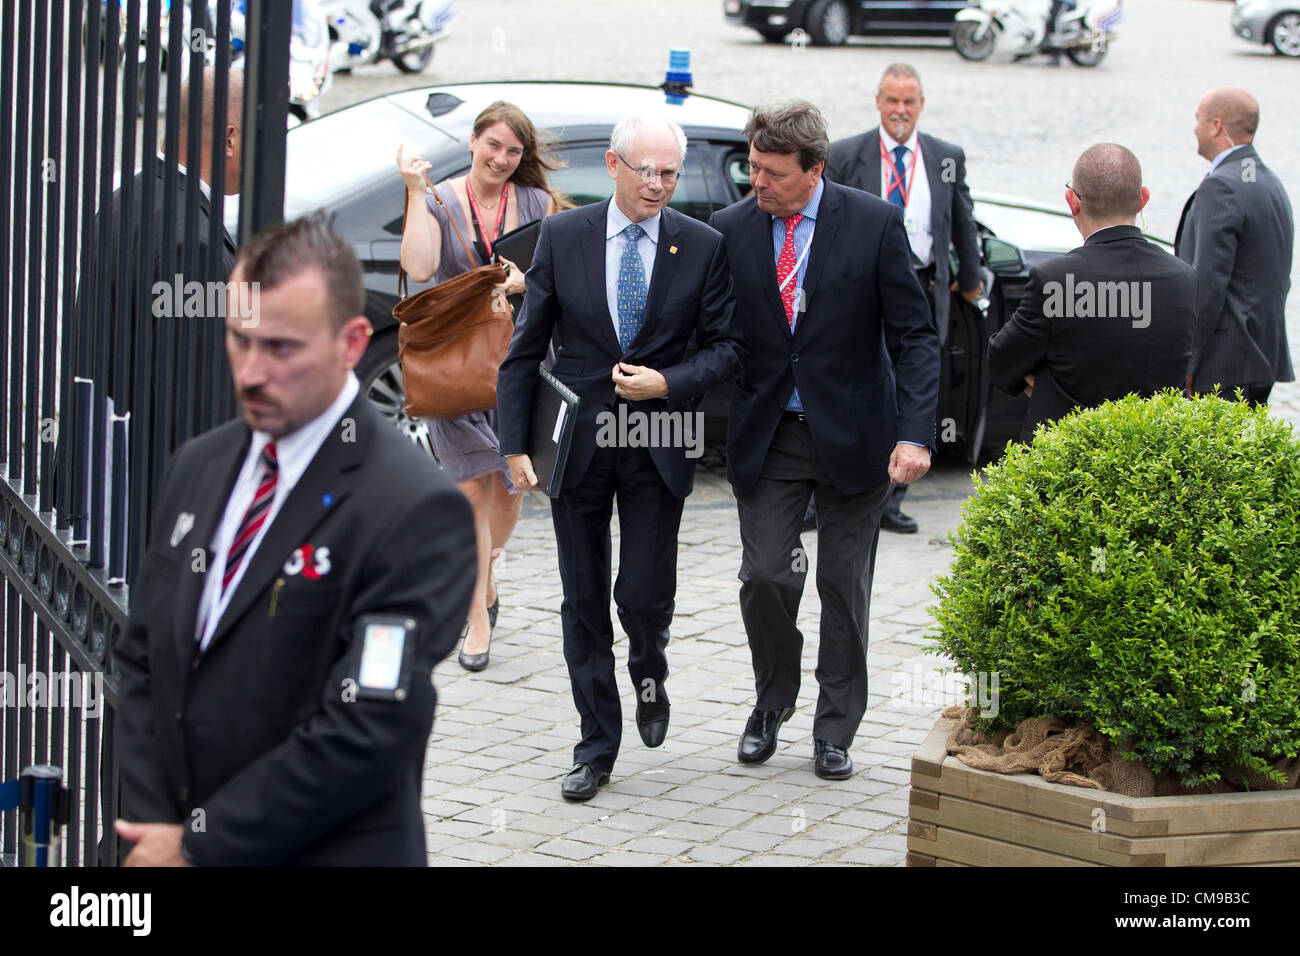 Vertice UE, Académie Royal de Belgique a Bruxelles. 28.06.2012 Foto mostra Herman Van Rompuy, Presidente del Consiglio europeo che arrivano a Europoean del Partito popolare nella riunione di Bruxelles, all' Academie Royal de Belgique. Foto Stock